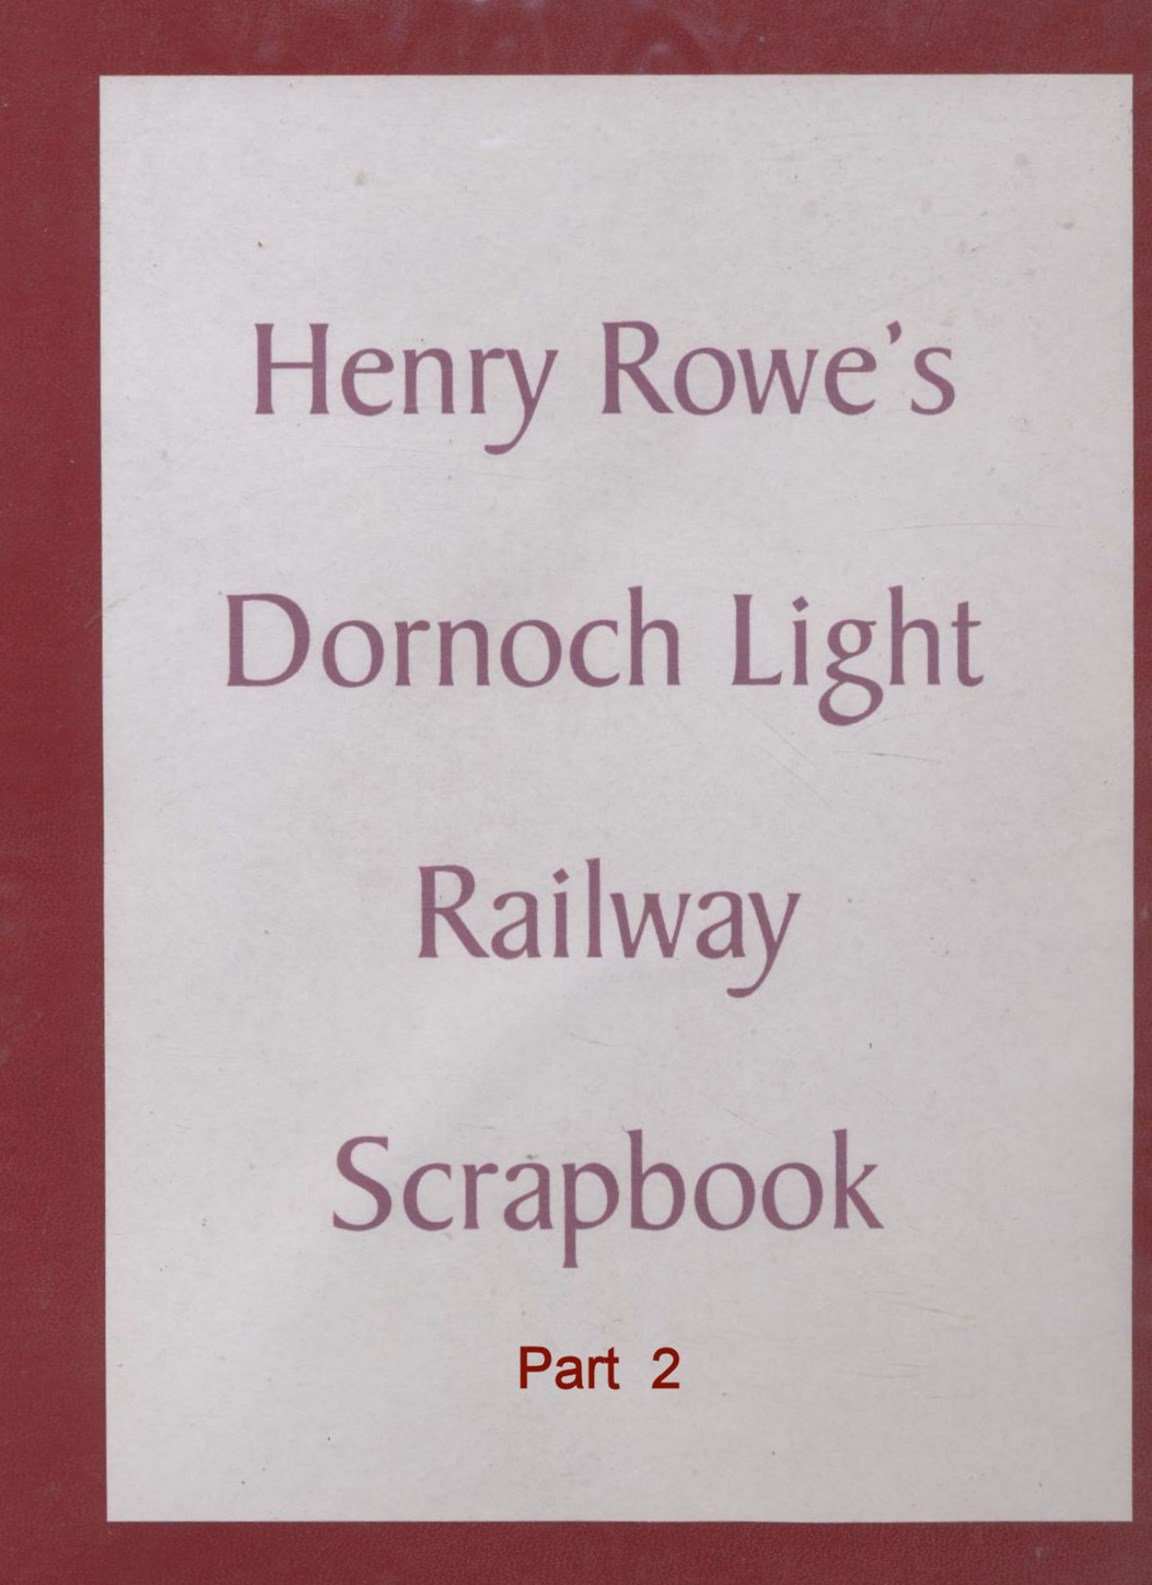 Railway scrapbook part 2